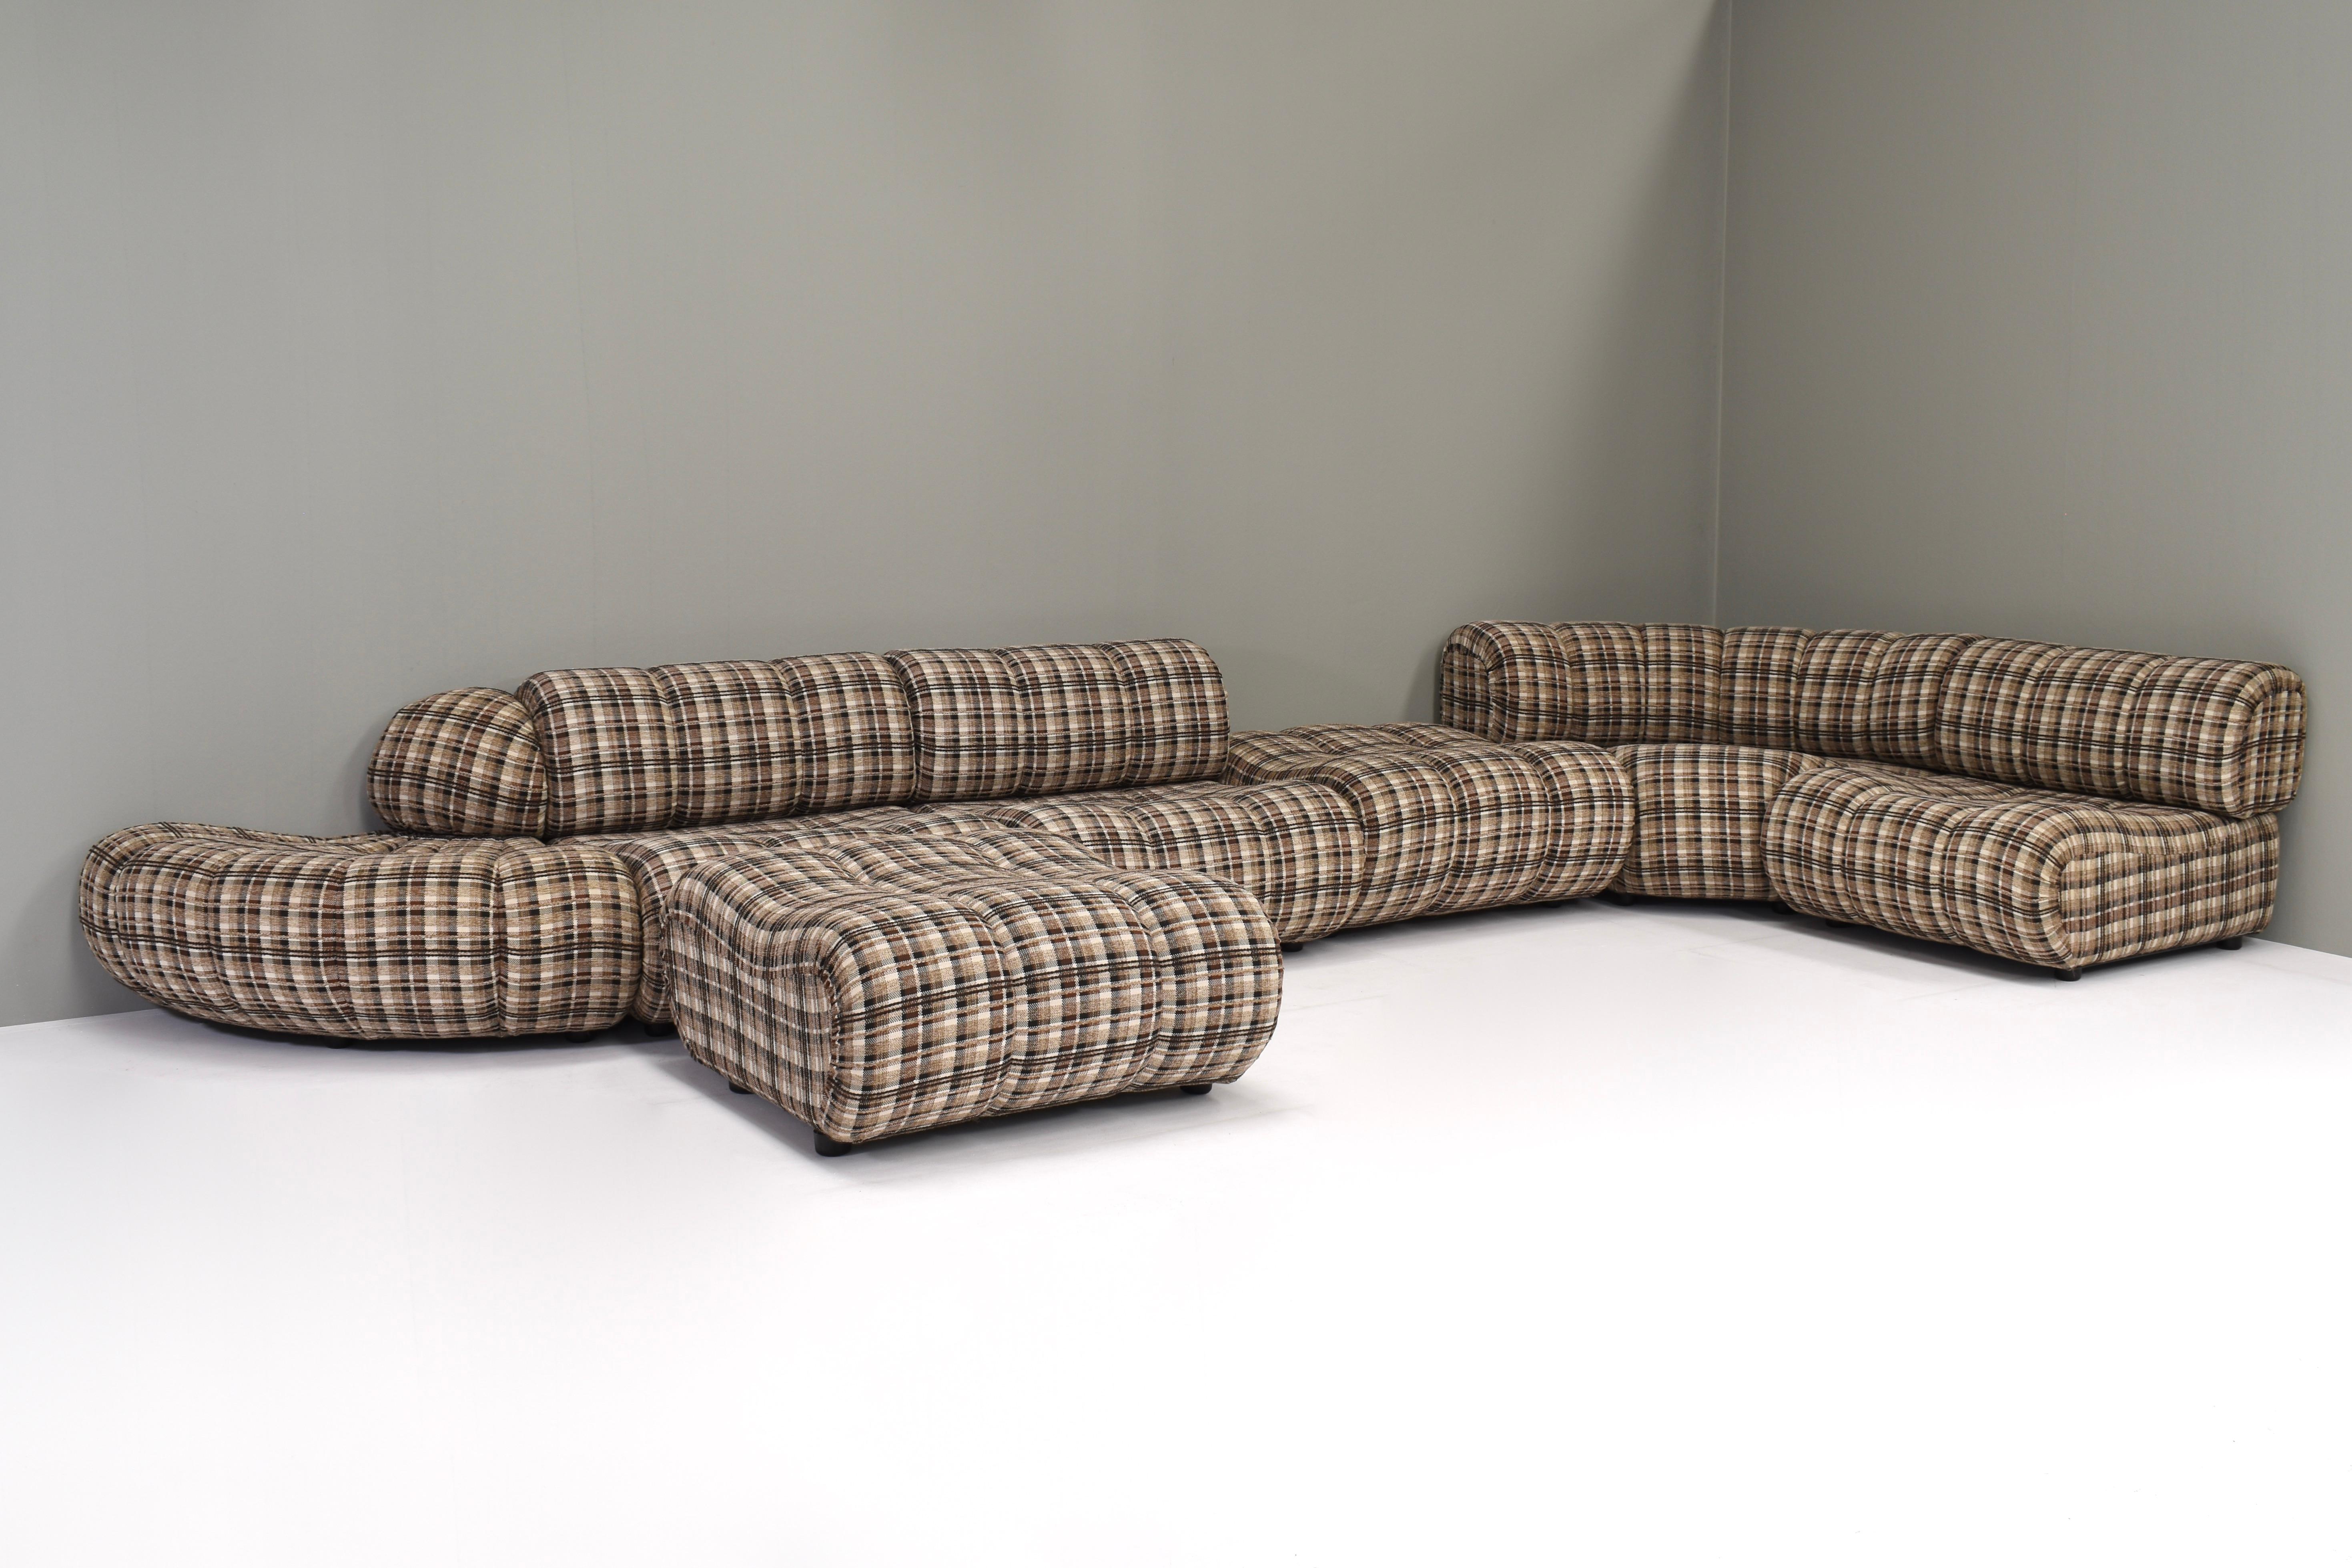 Rare canapé sectionnel de Giuseppe Munari pour Poltrona Munari, Italie circa 1970.
Ce canapé est composé de 7 éléments qui peuvent être agencés pour former différentes configurations à votre guise.
Le tissu est encore d'origine et est composé d'un